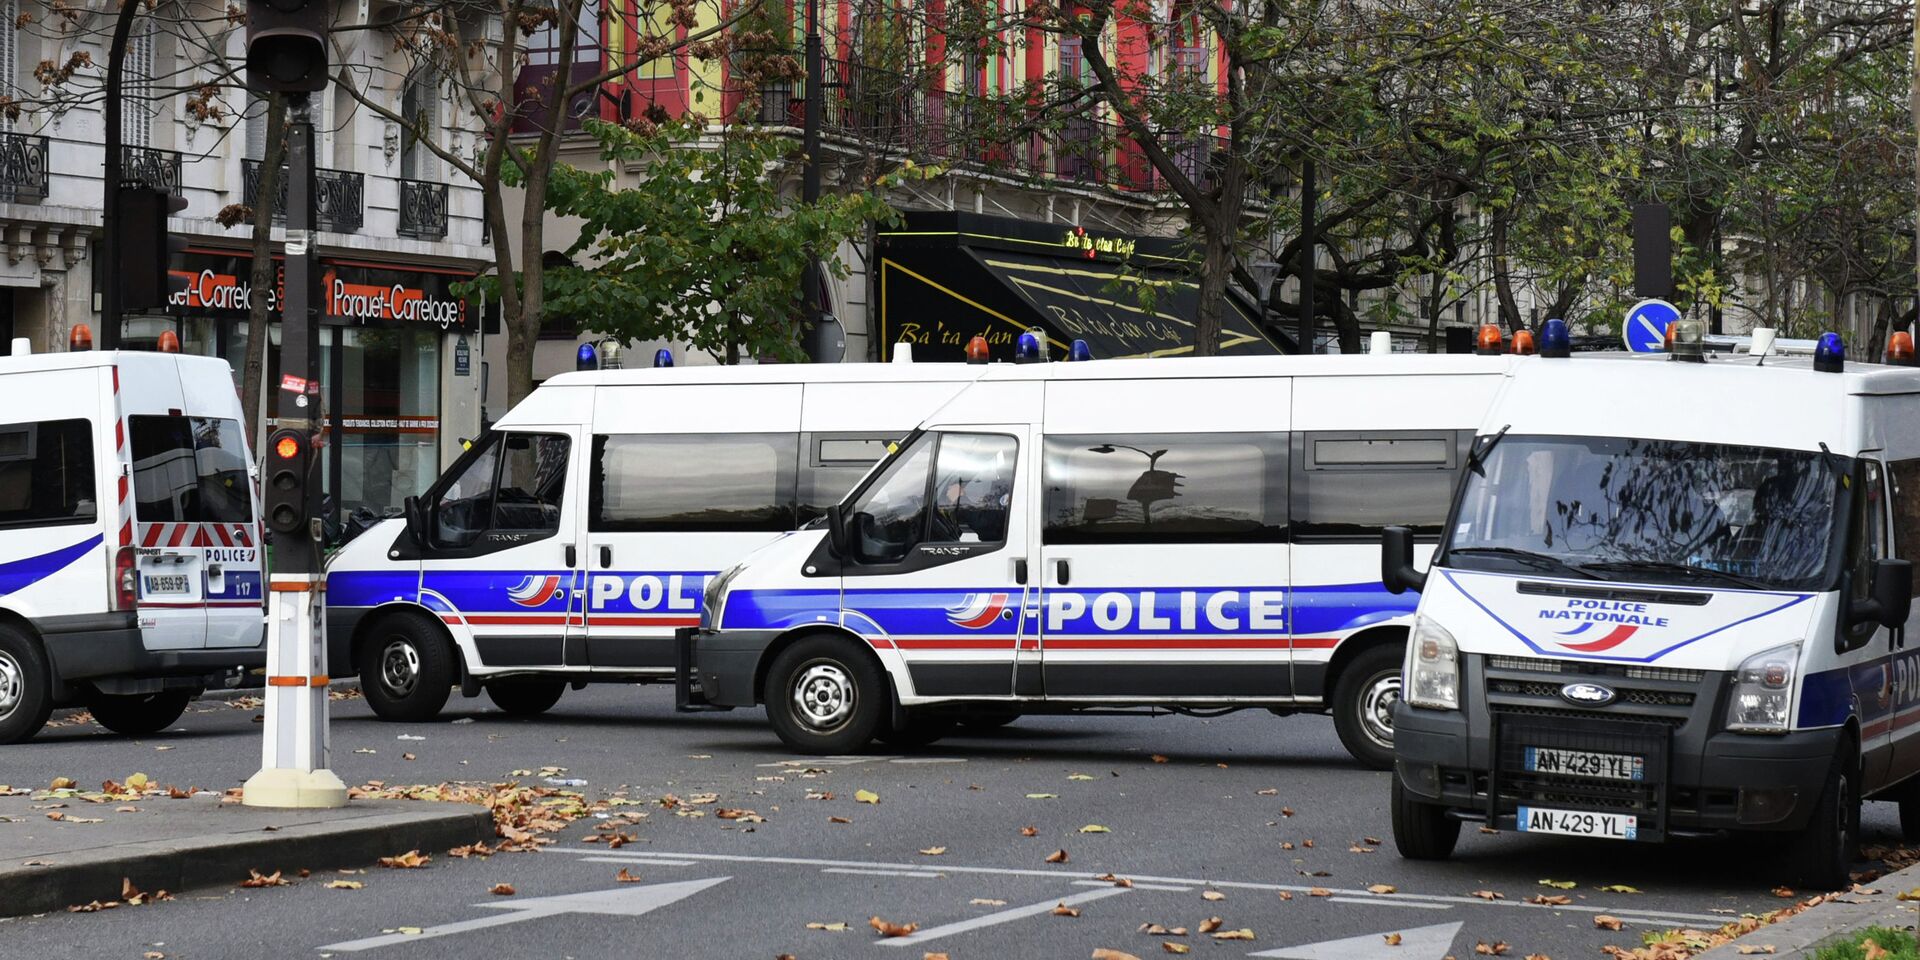 Иносми о теракте. Полиция Парижа. Теракты в Париже 2015 кадры. Теракты в Париже 13 ноября сколько погибших.